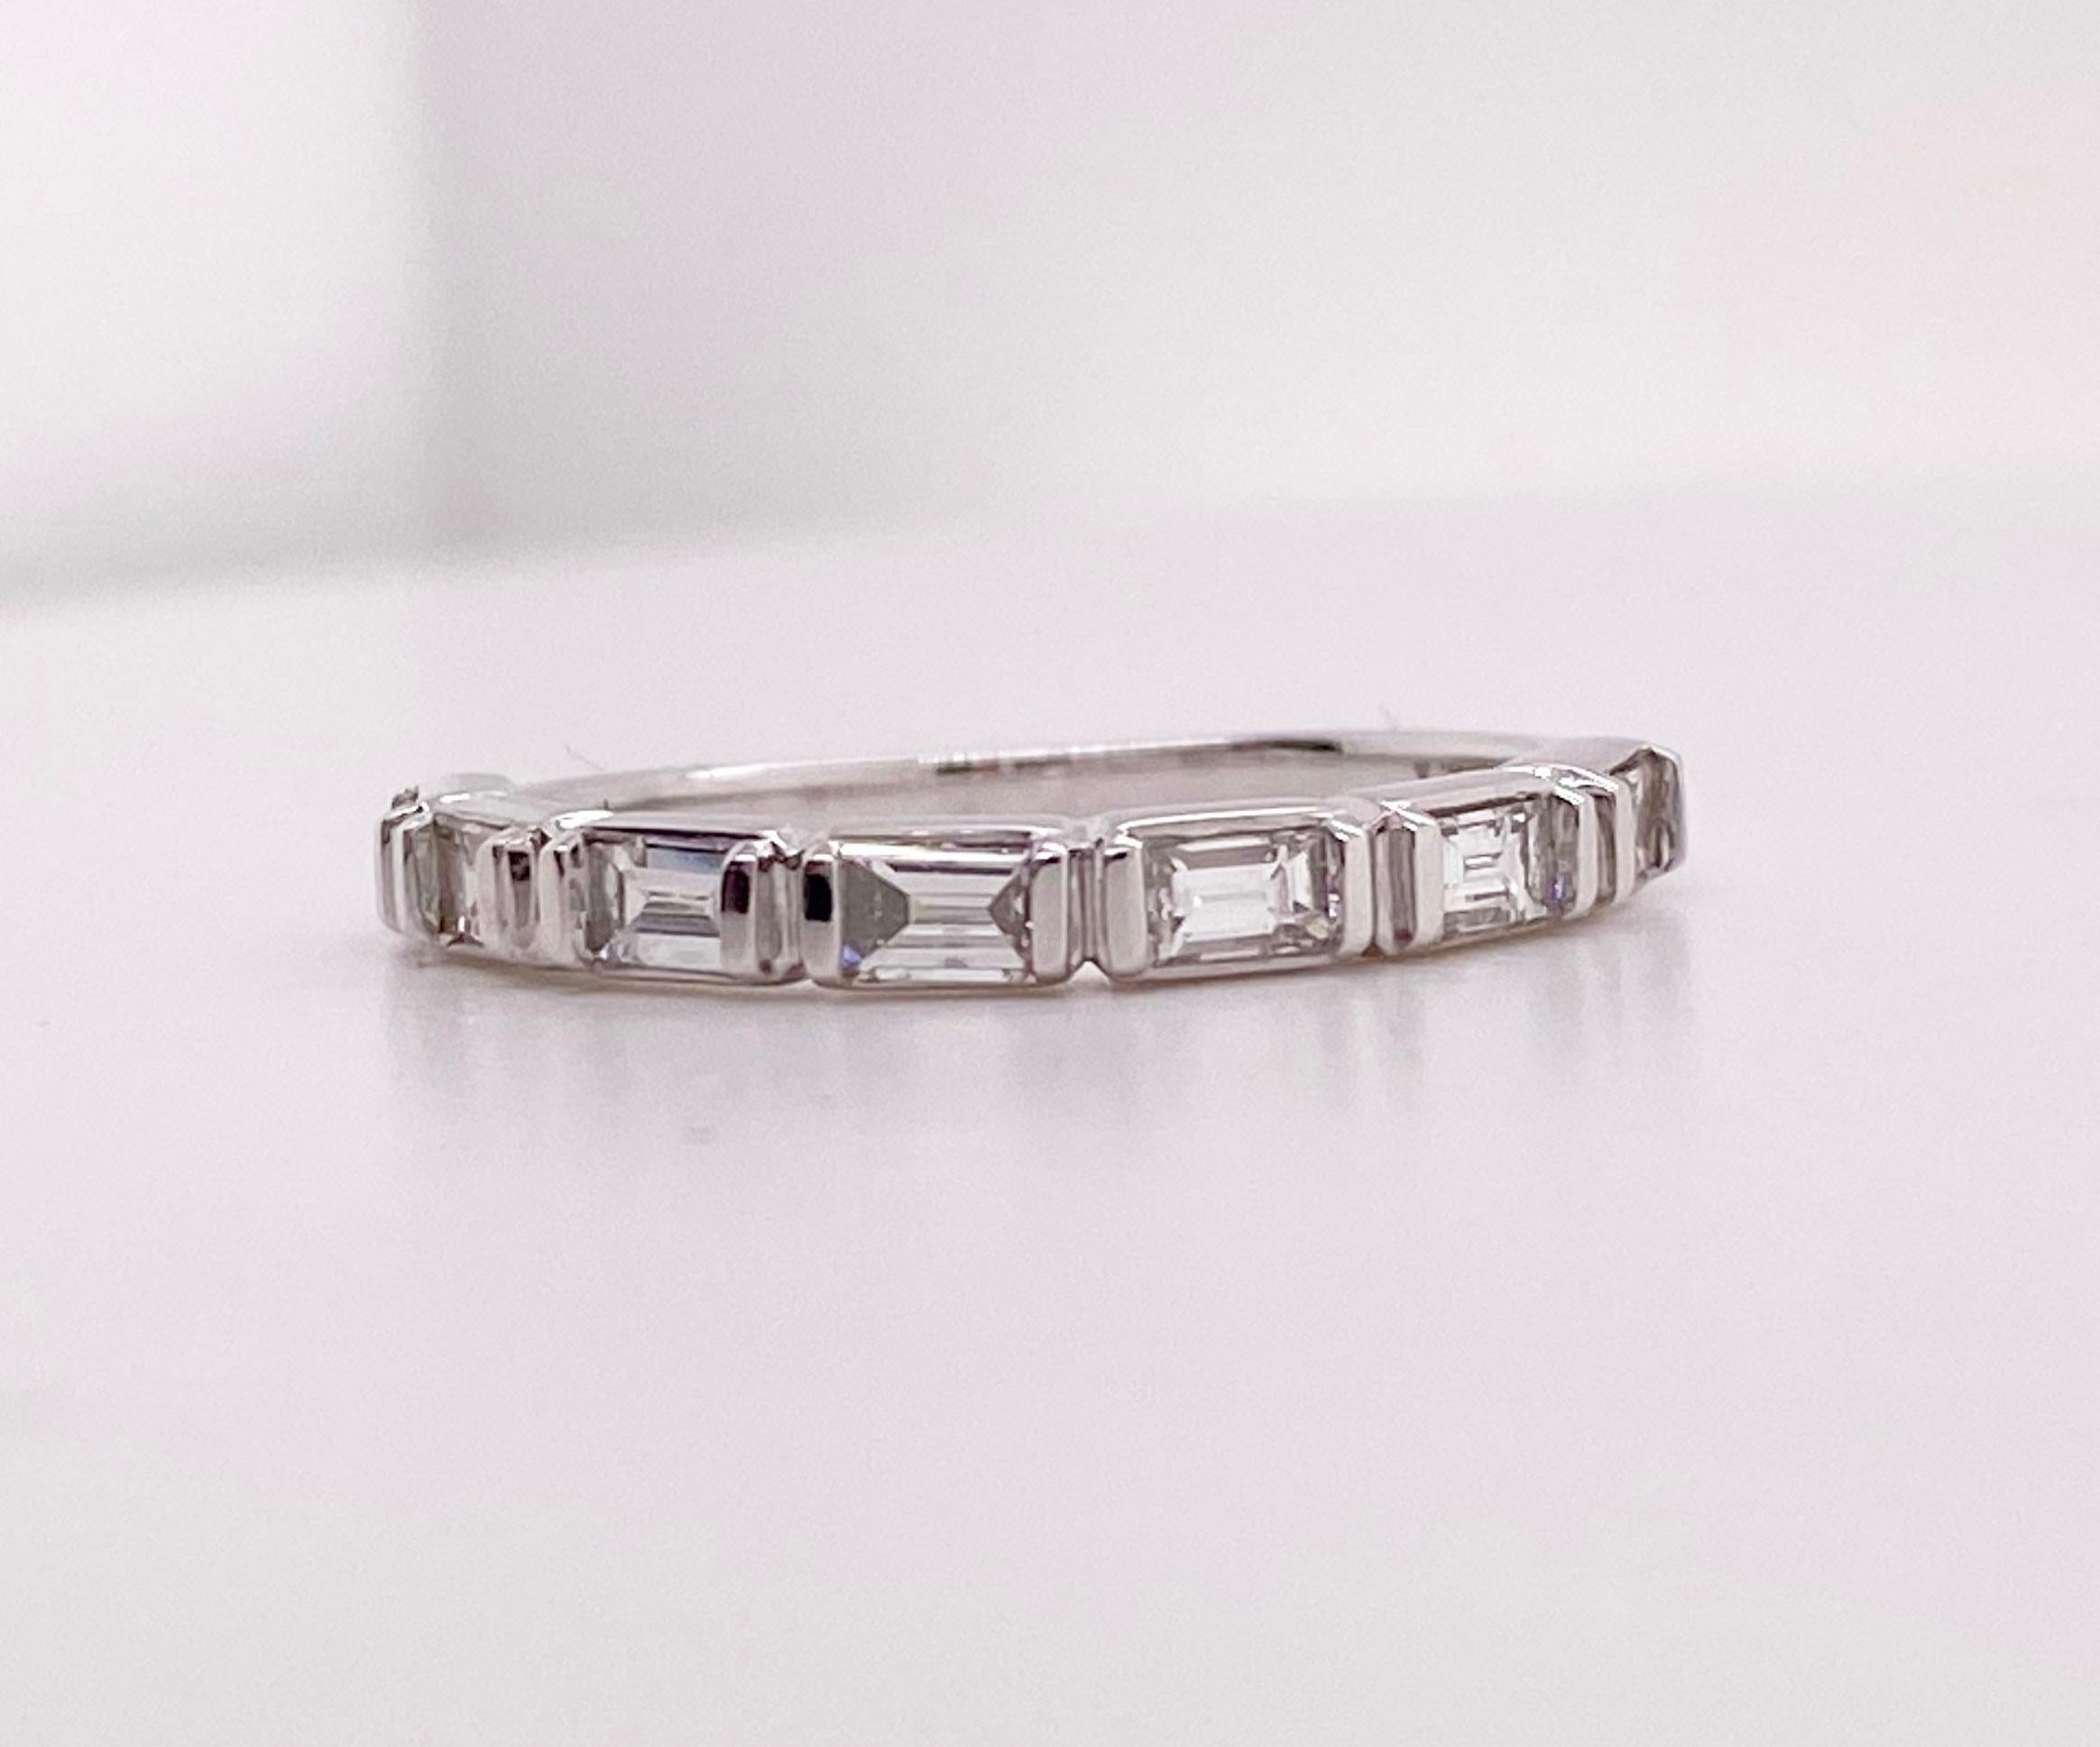 Die Details zu diesem schönen Ring sind unten aufgeführt:
Metallqualität: 14 Karat Weißgold
Diamant Nummer: 7
Diamant Gesamtgewicht: .5 ct 
Reinheit des Diamanten: VS2 (ausgezeichnet, augenrein)
Farbe des Diamanten: G (ausgezeichnet, nahezu